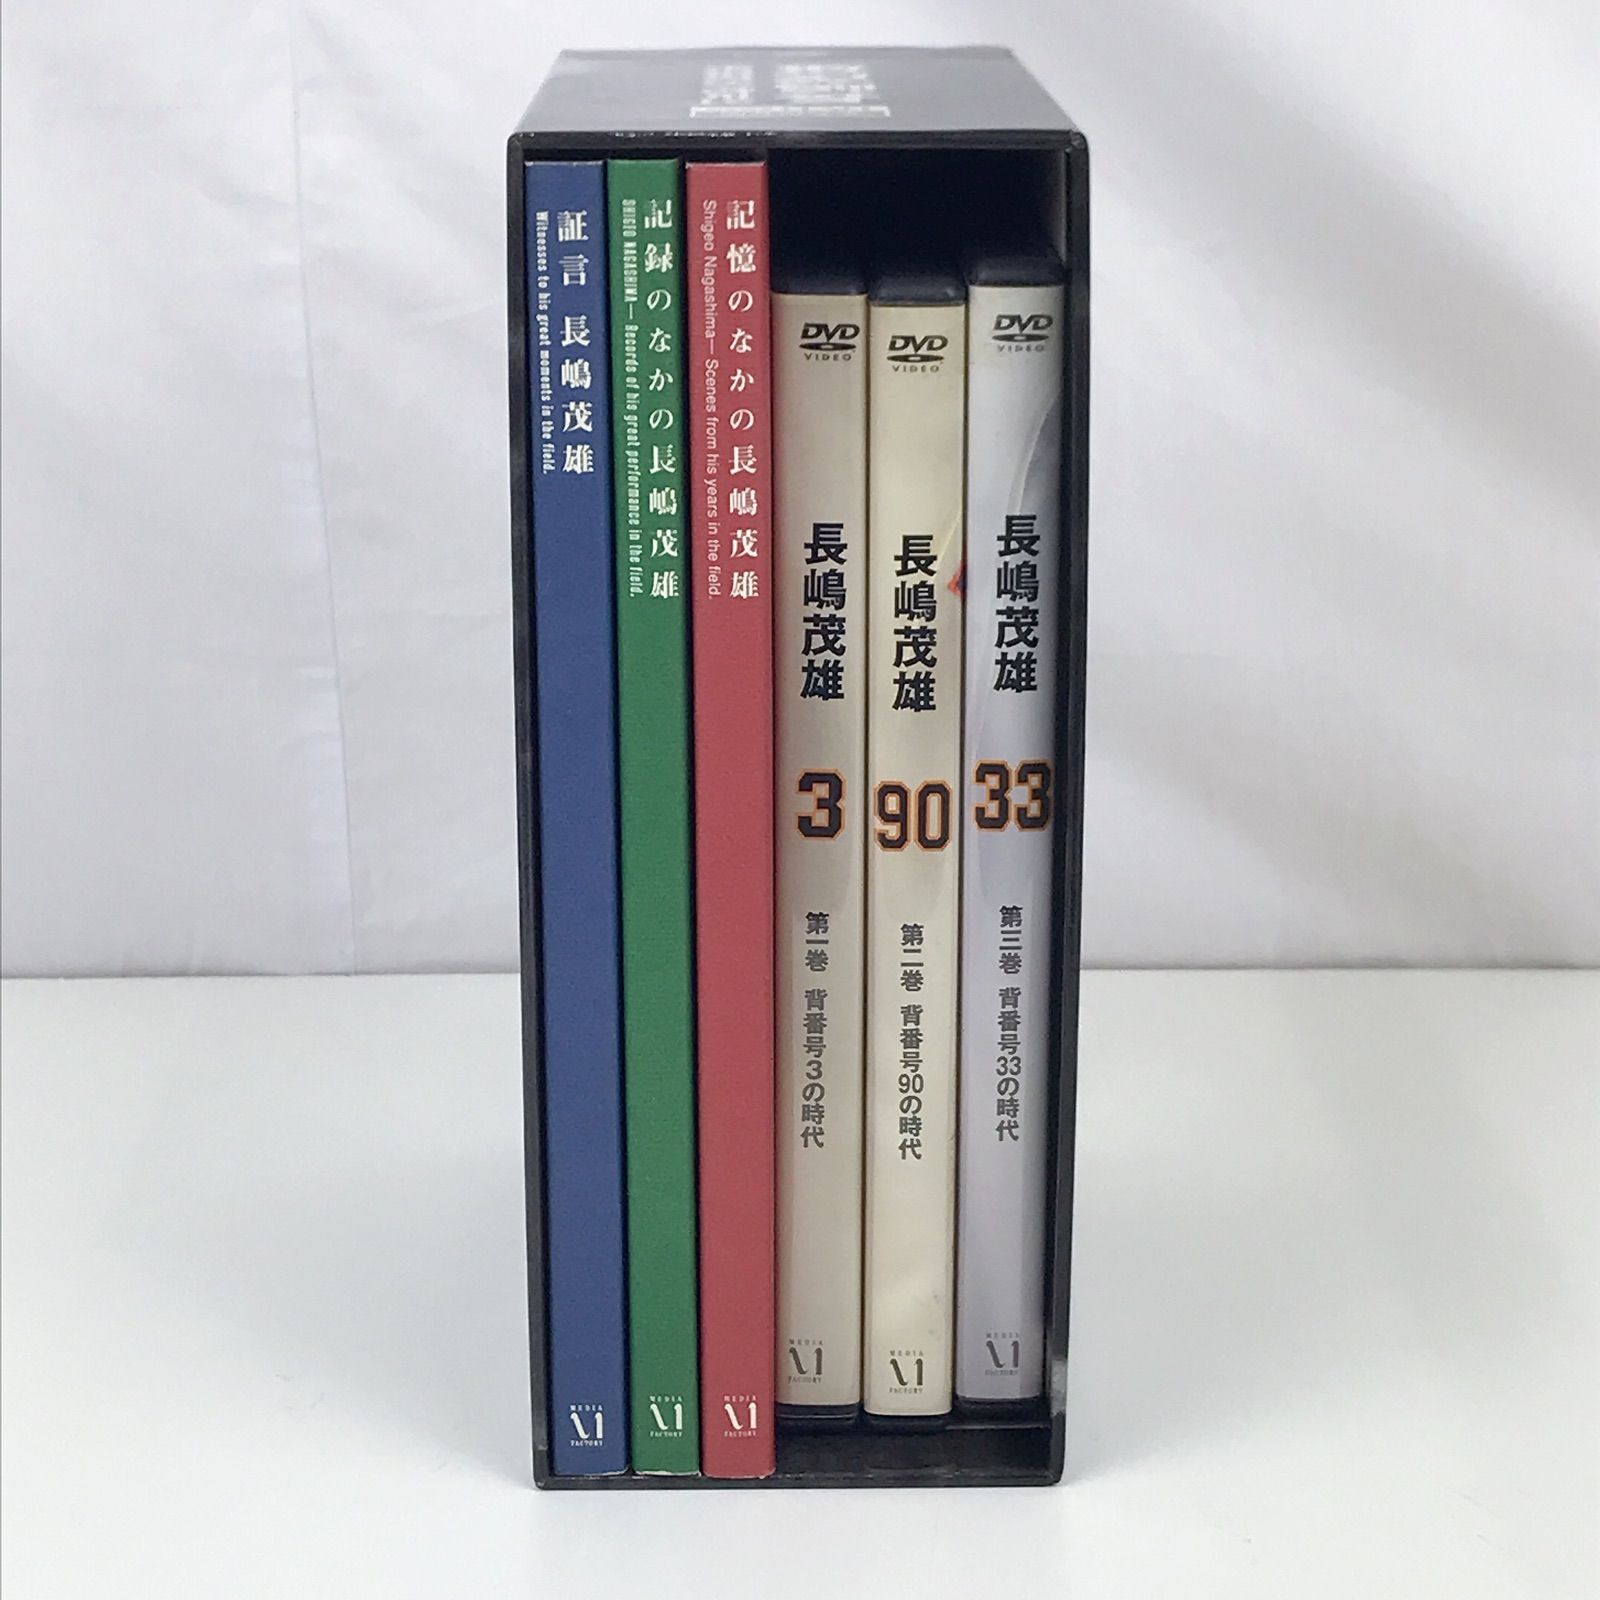 その他176 長嶋茂雄 21世紀への伝説史 永久保存版DVD&BOOK BOXセット